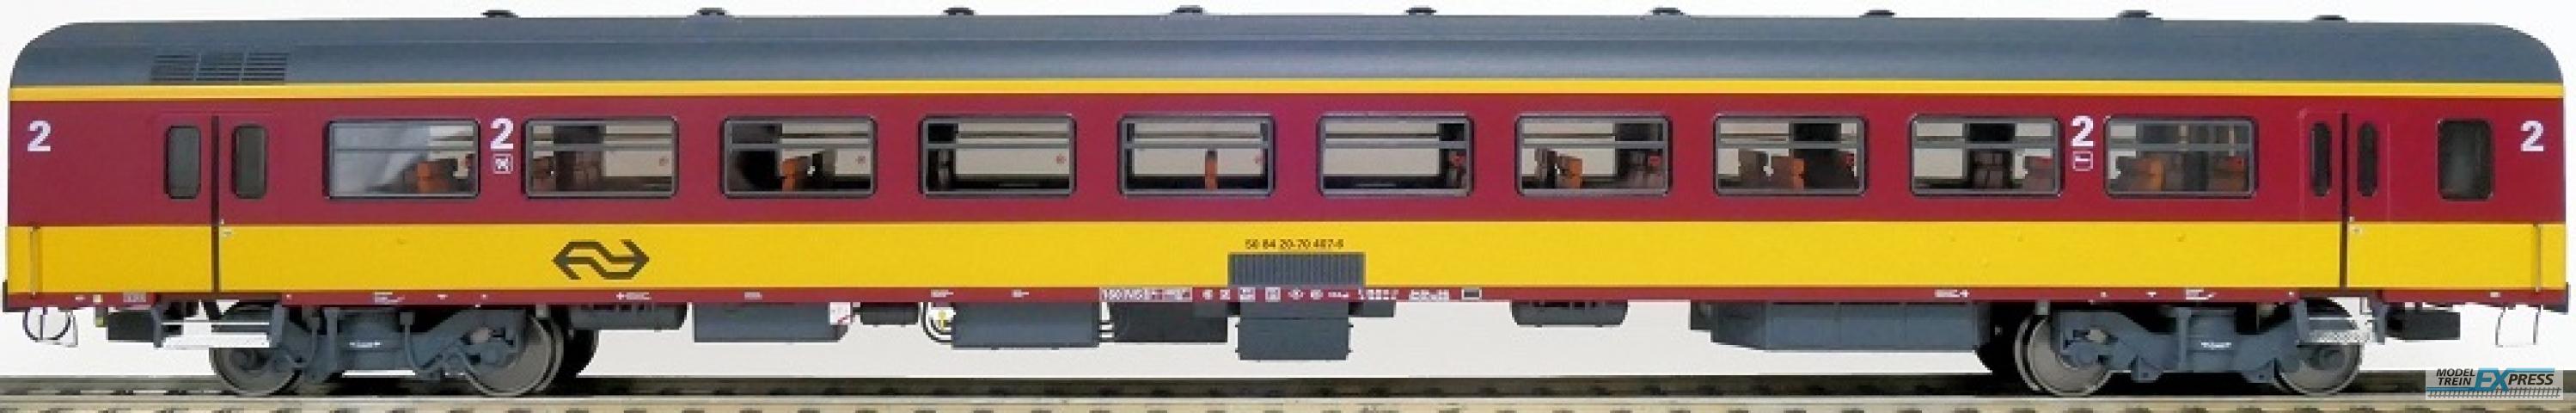 Exact-train 11170 NS ICR (Originalversion) für den Beneluxzug nach Belgien Reisezugwagen B ( Farbe Gelb / Rot) mit Beleuchtung und Figuren, Ep. IV